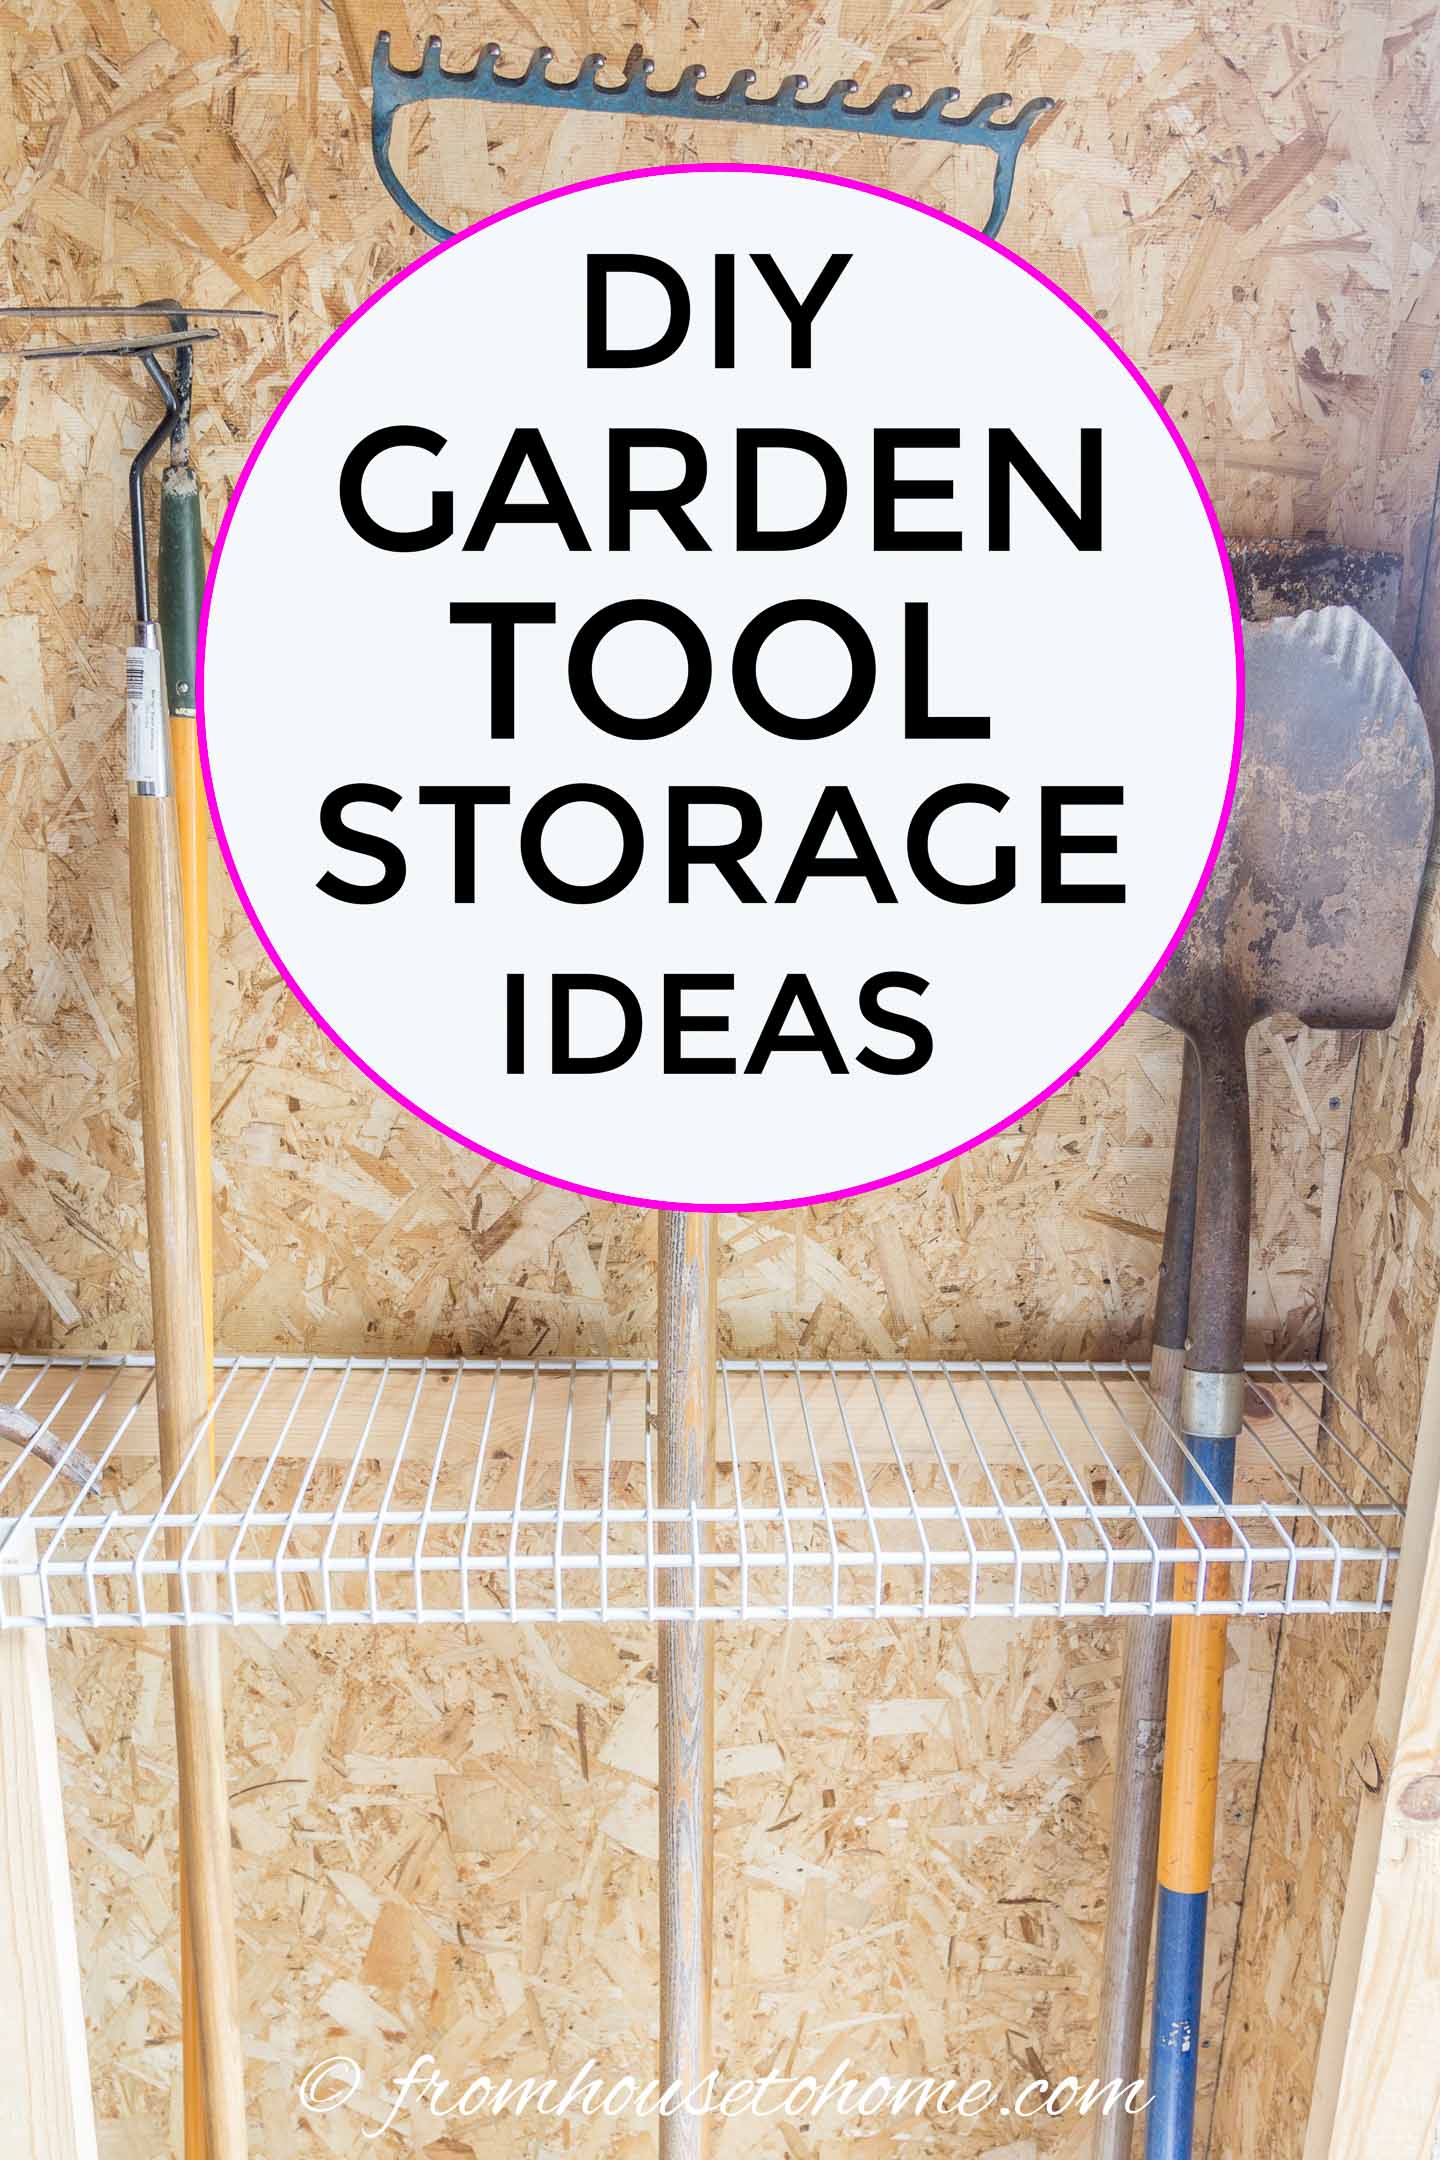 DIY garden tool storage ideas